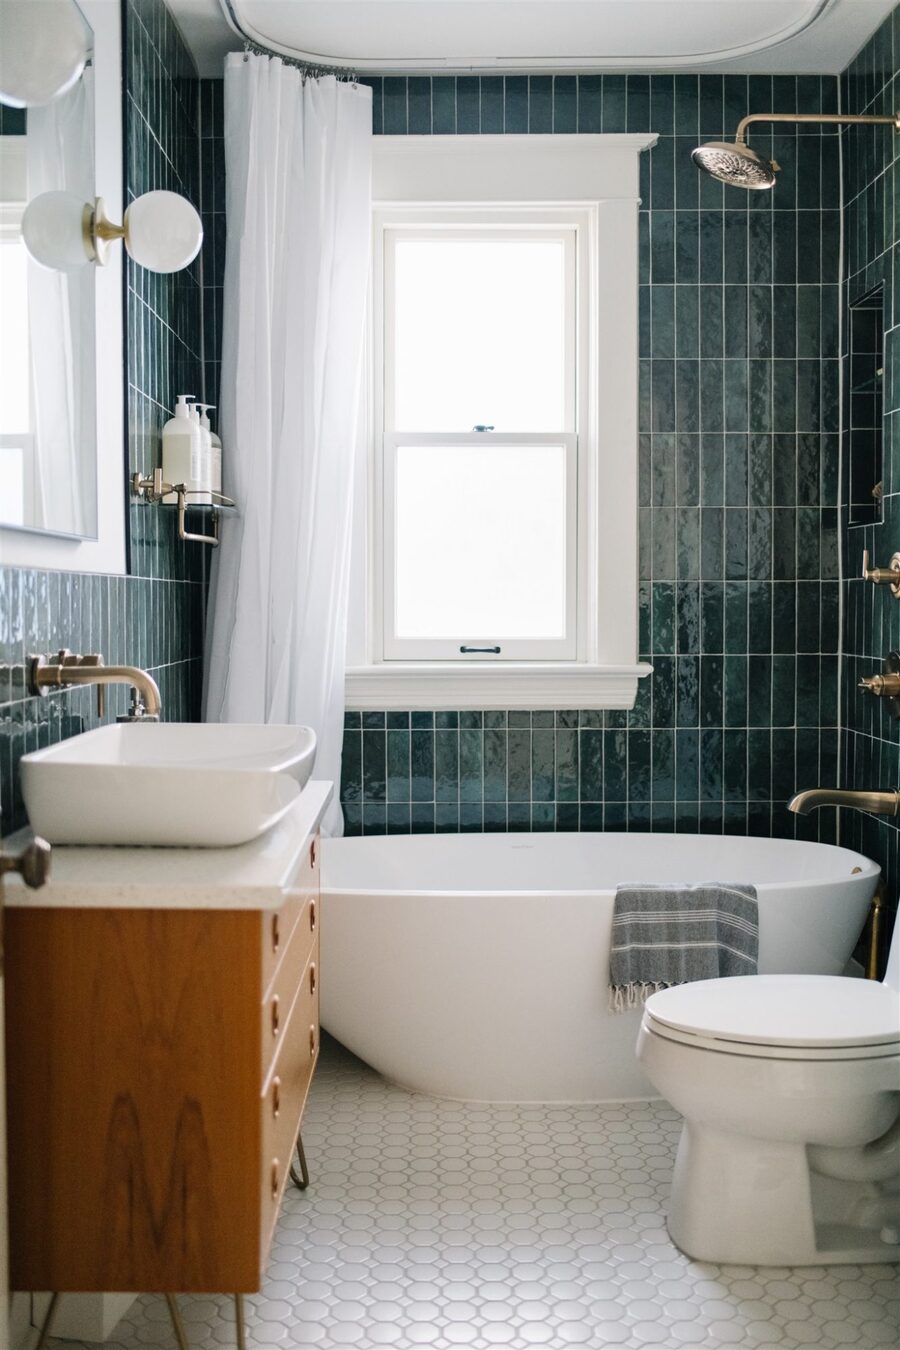 Baño con tina blanca con forma ovalada, azulejos verde petróleo y mueble del lavamanos de madera. El lavatorio, el piso y la cortina de la ducha son blancas, mientras que la grifería es dorada.